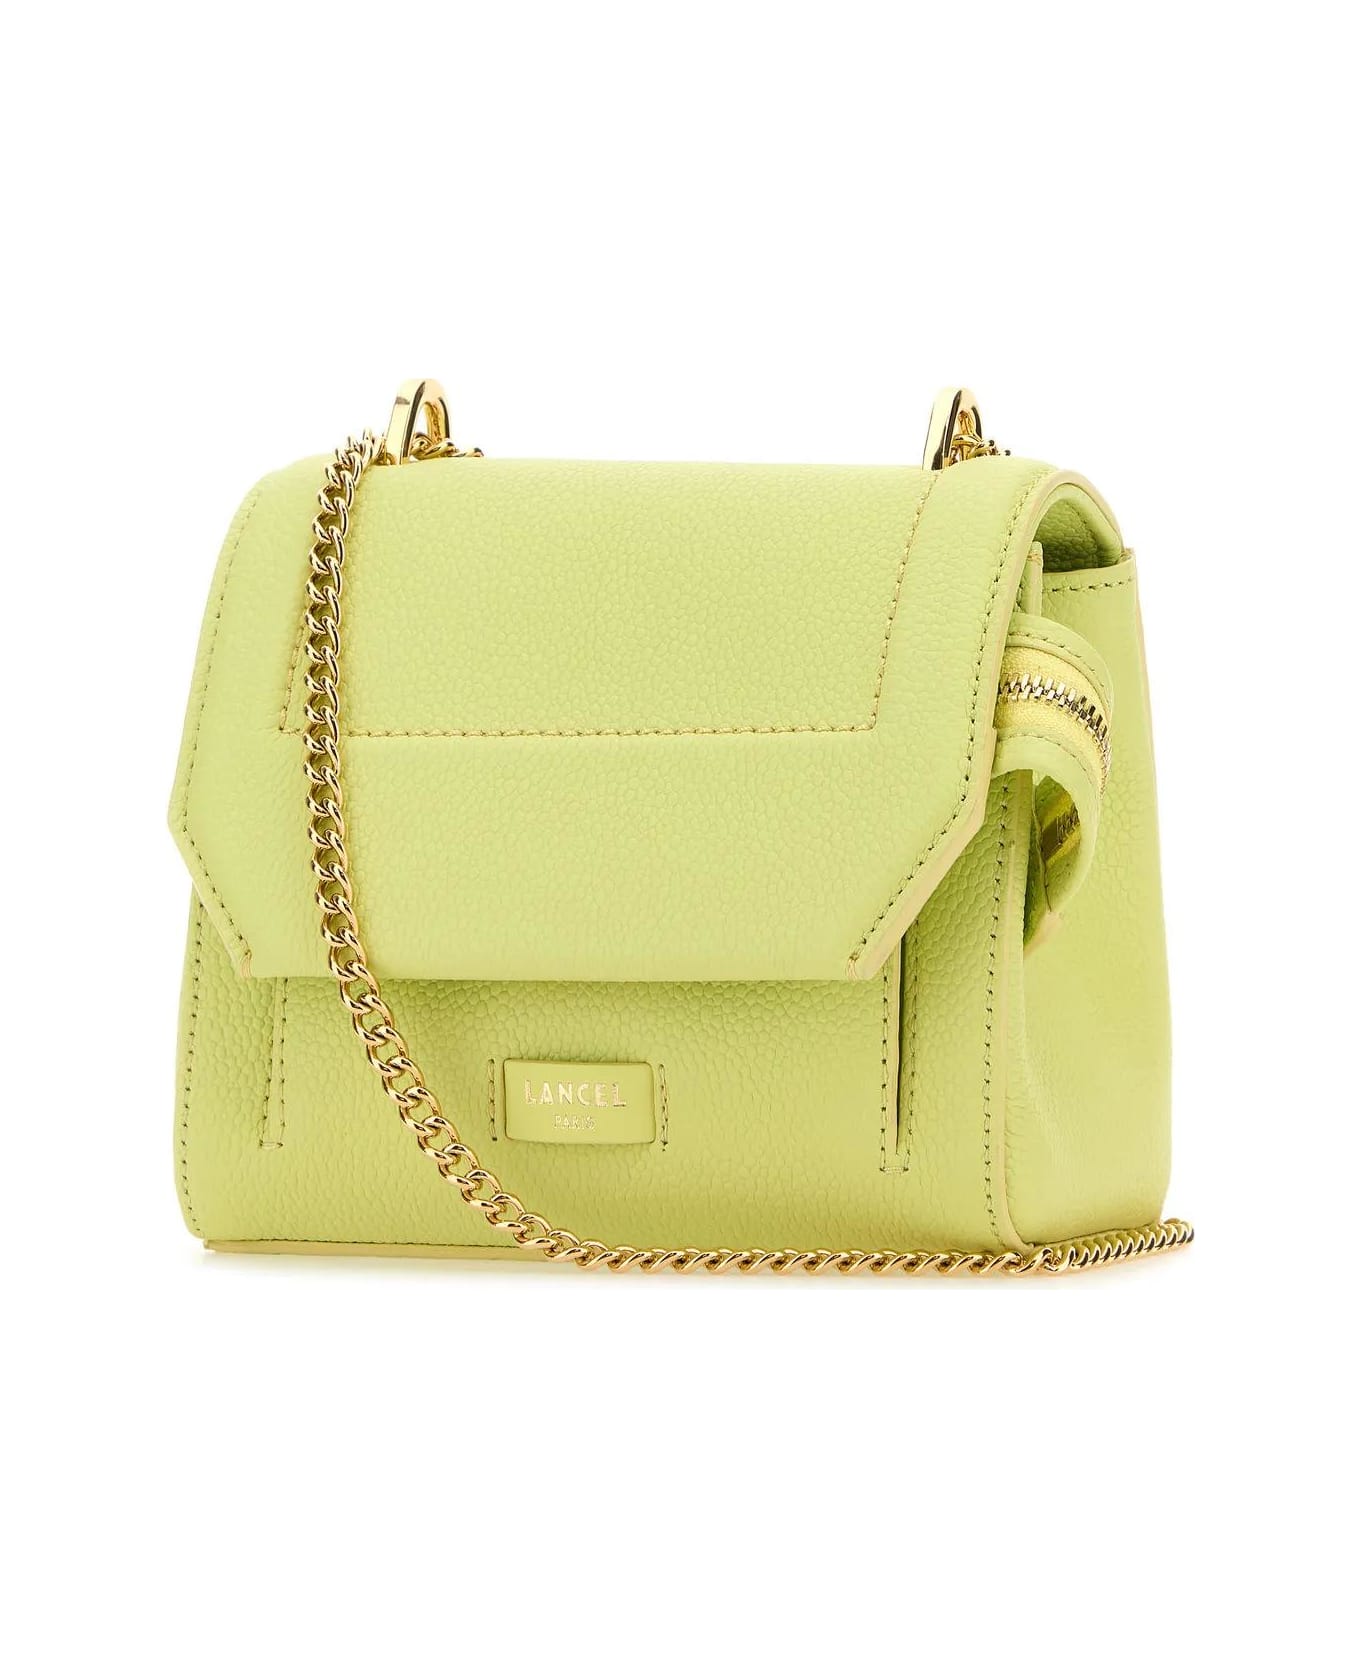 Lancel Fluo Yellow Leather Ninon Handbag - Lime